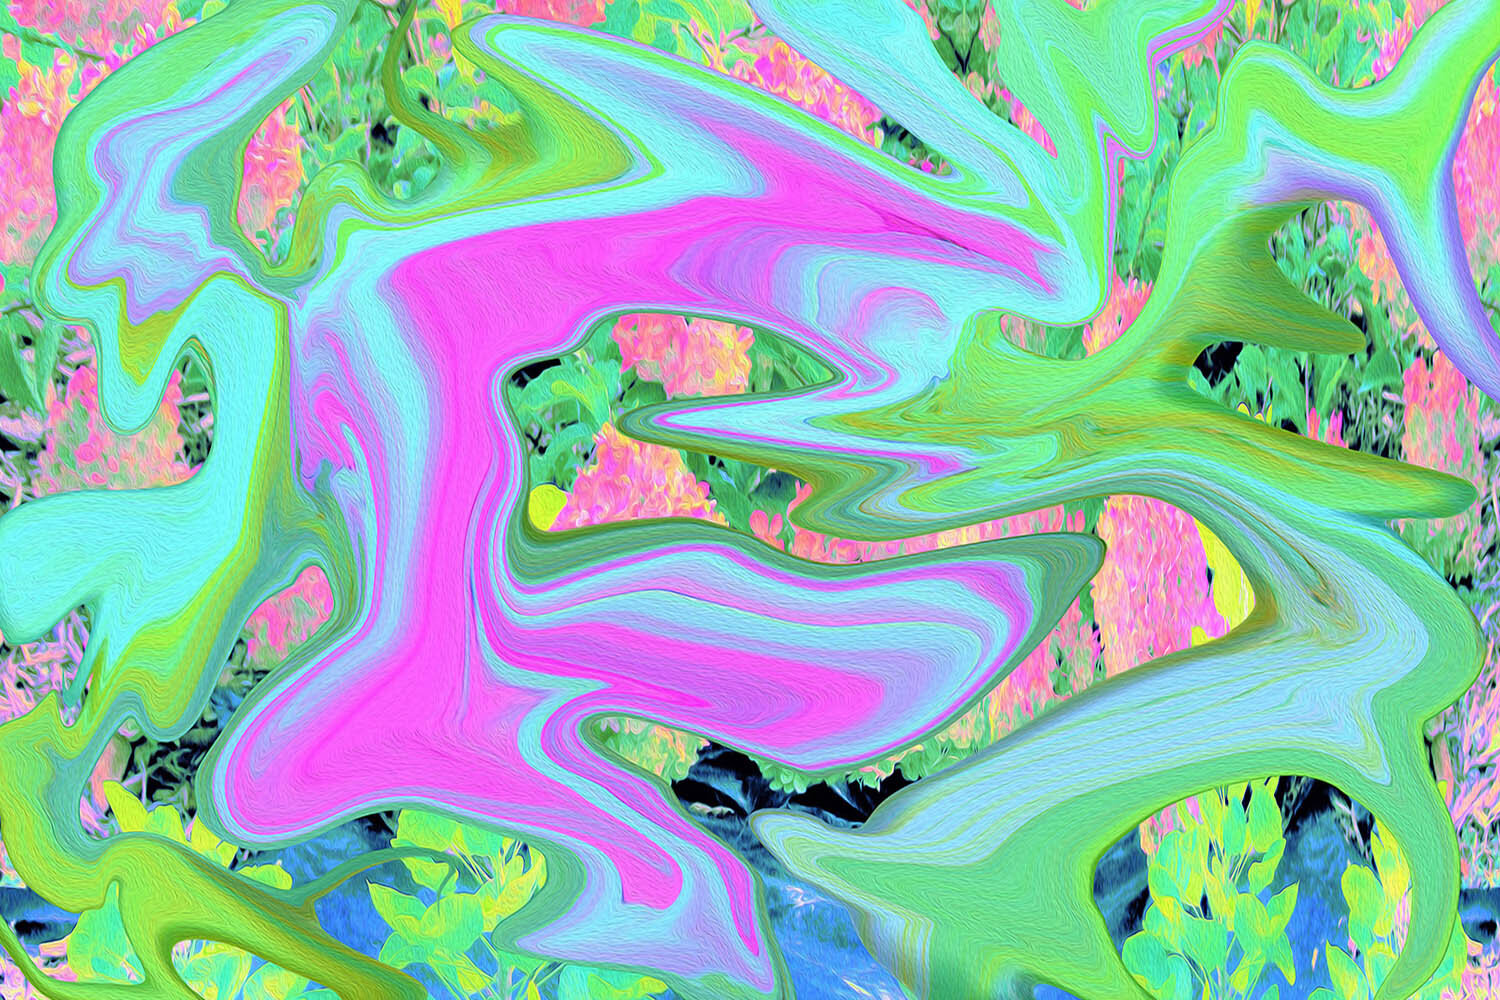 Retro Pink and Light Blue Liquid Art on Hydrangea